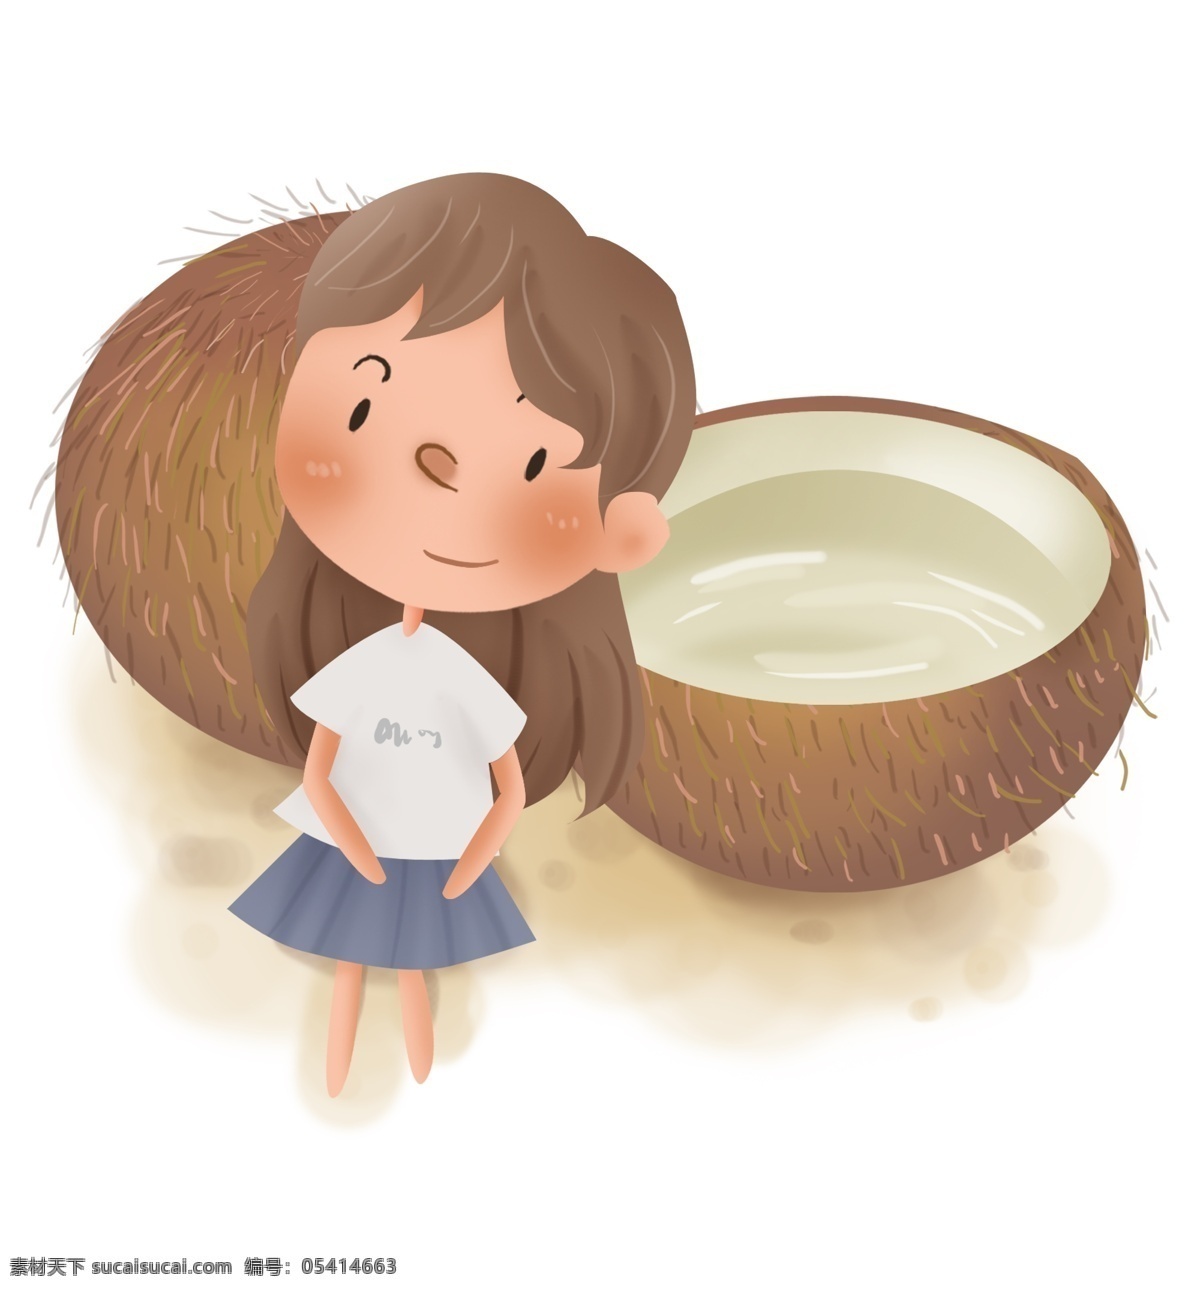 解暑 水果 椰子 儿童 夏季 解暑水果 幼儿园 椰子汁 吃椰子 小暑 入夏 大暑 炎热